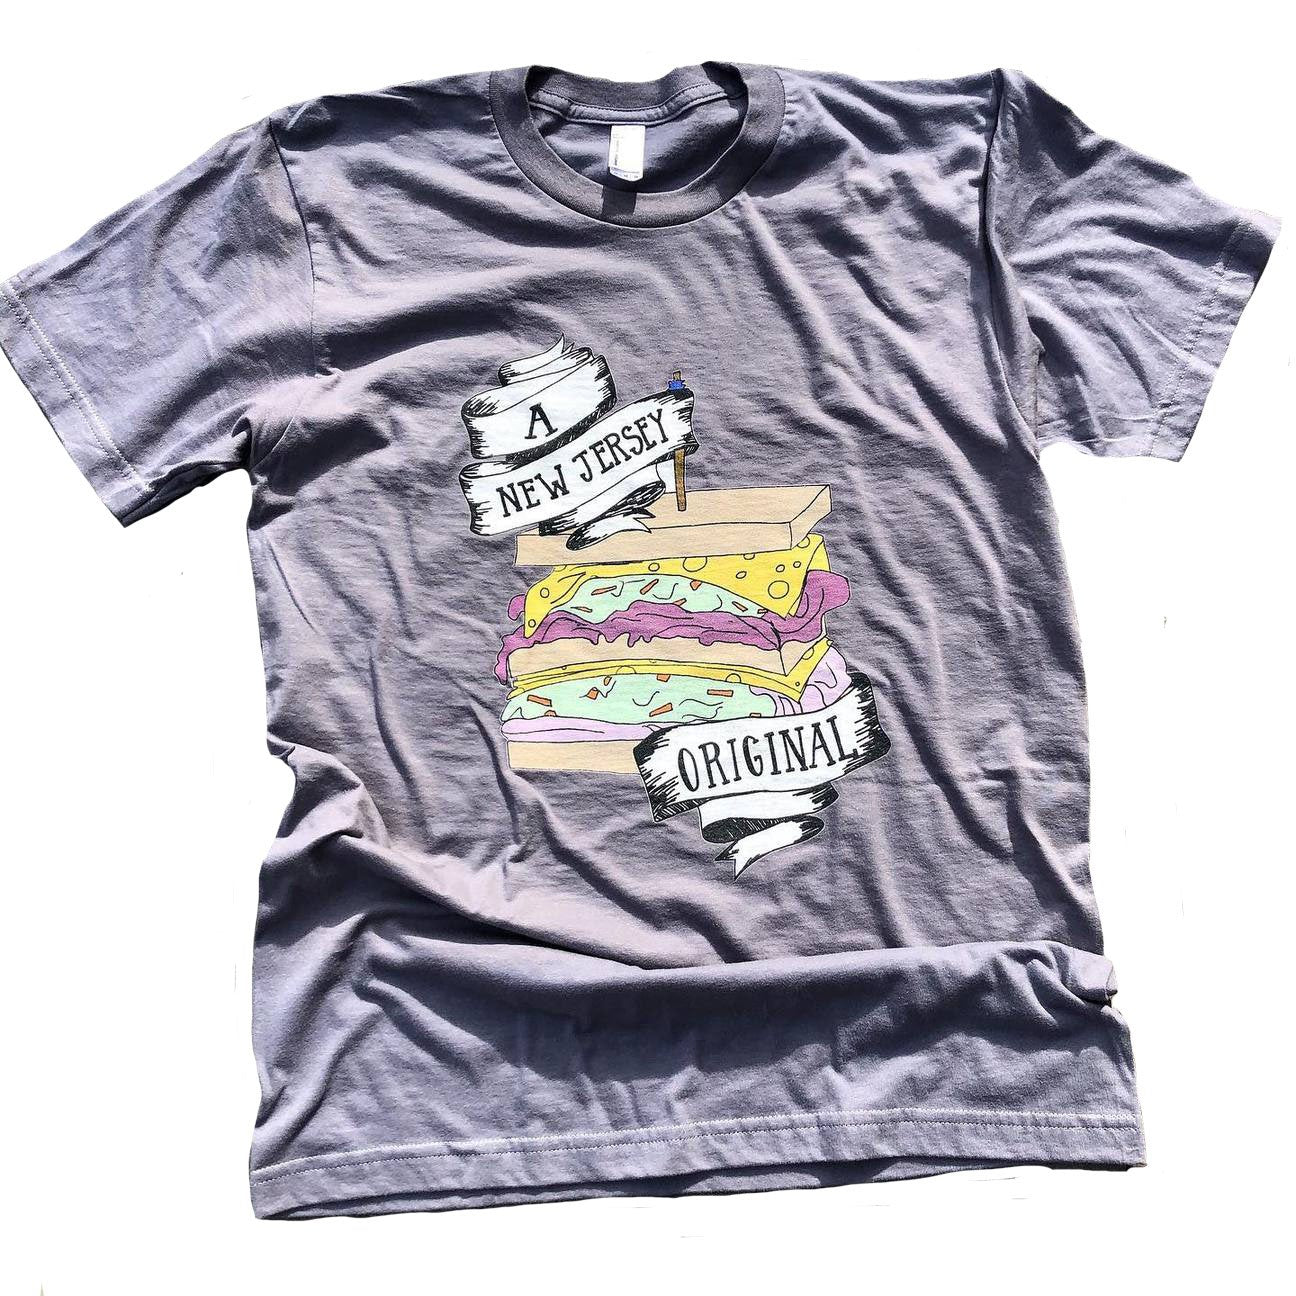 A New Jersey Original - Sloppy Joe T-shirt